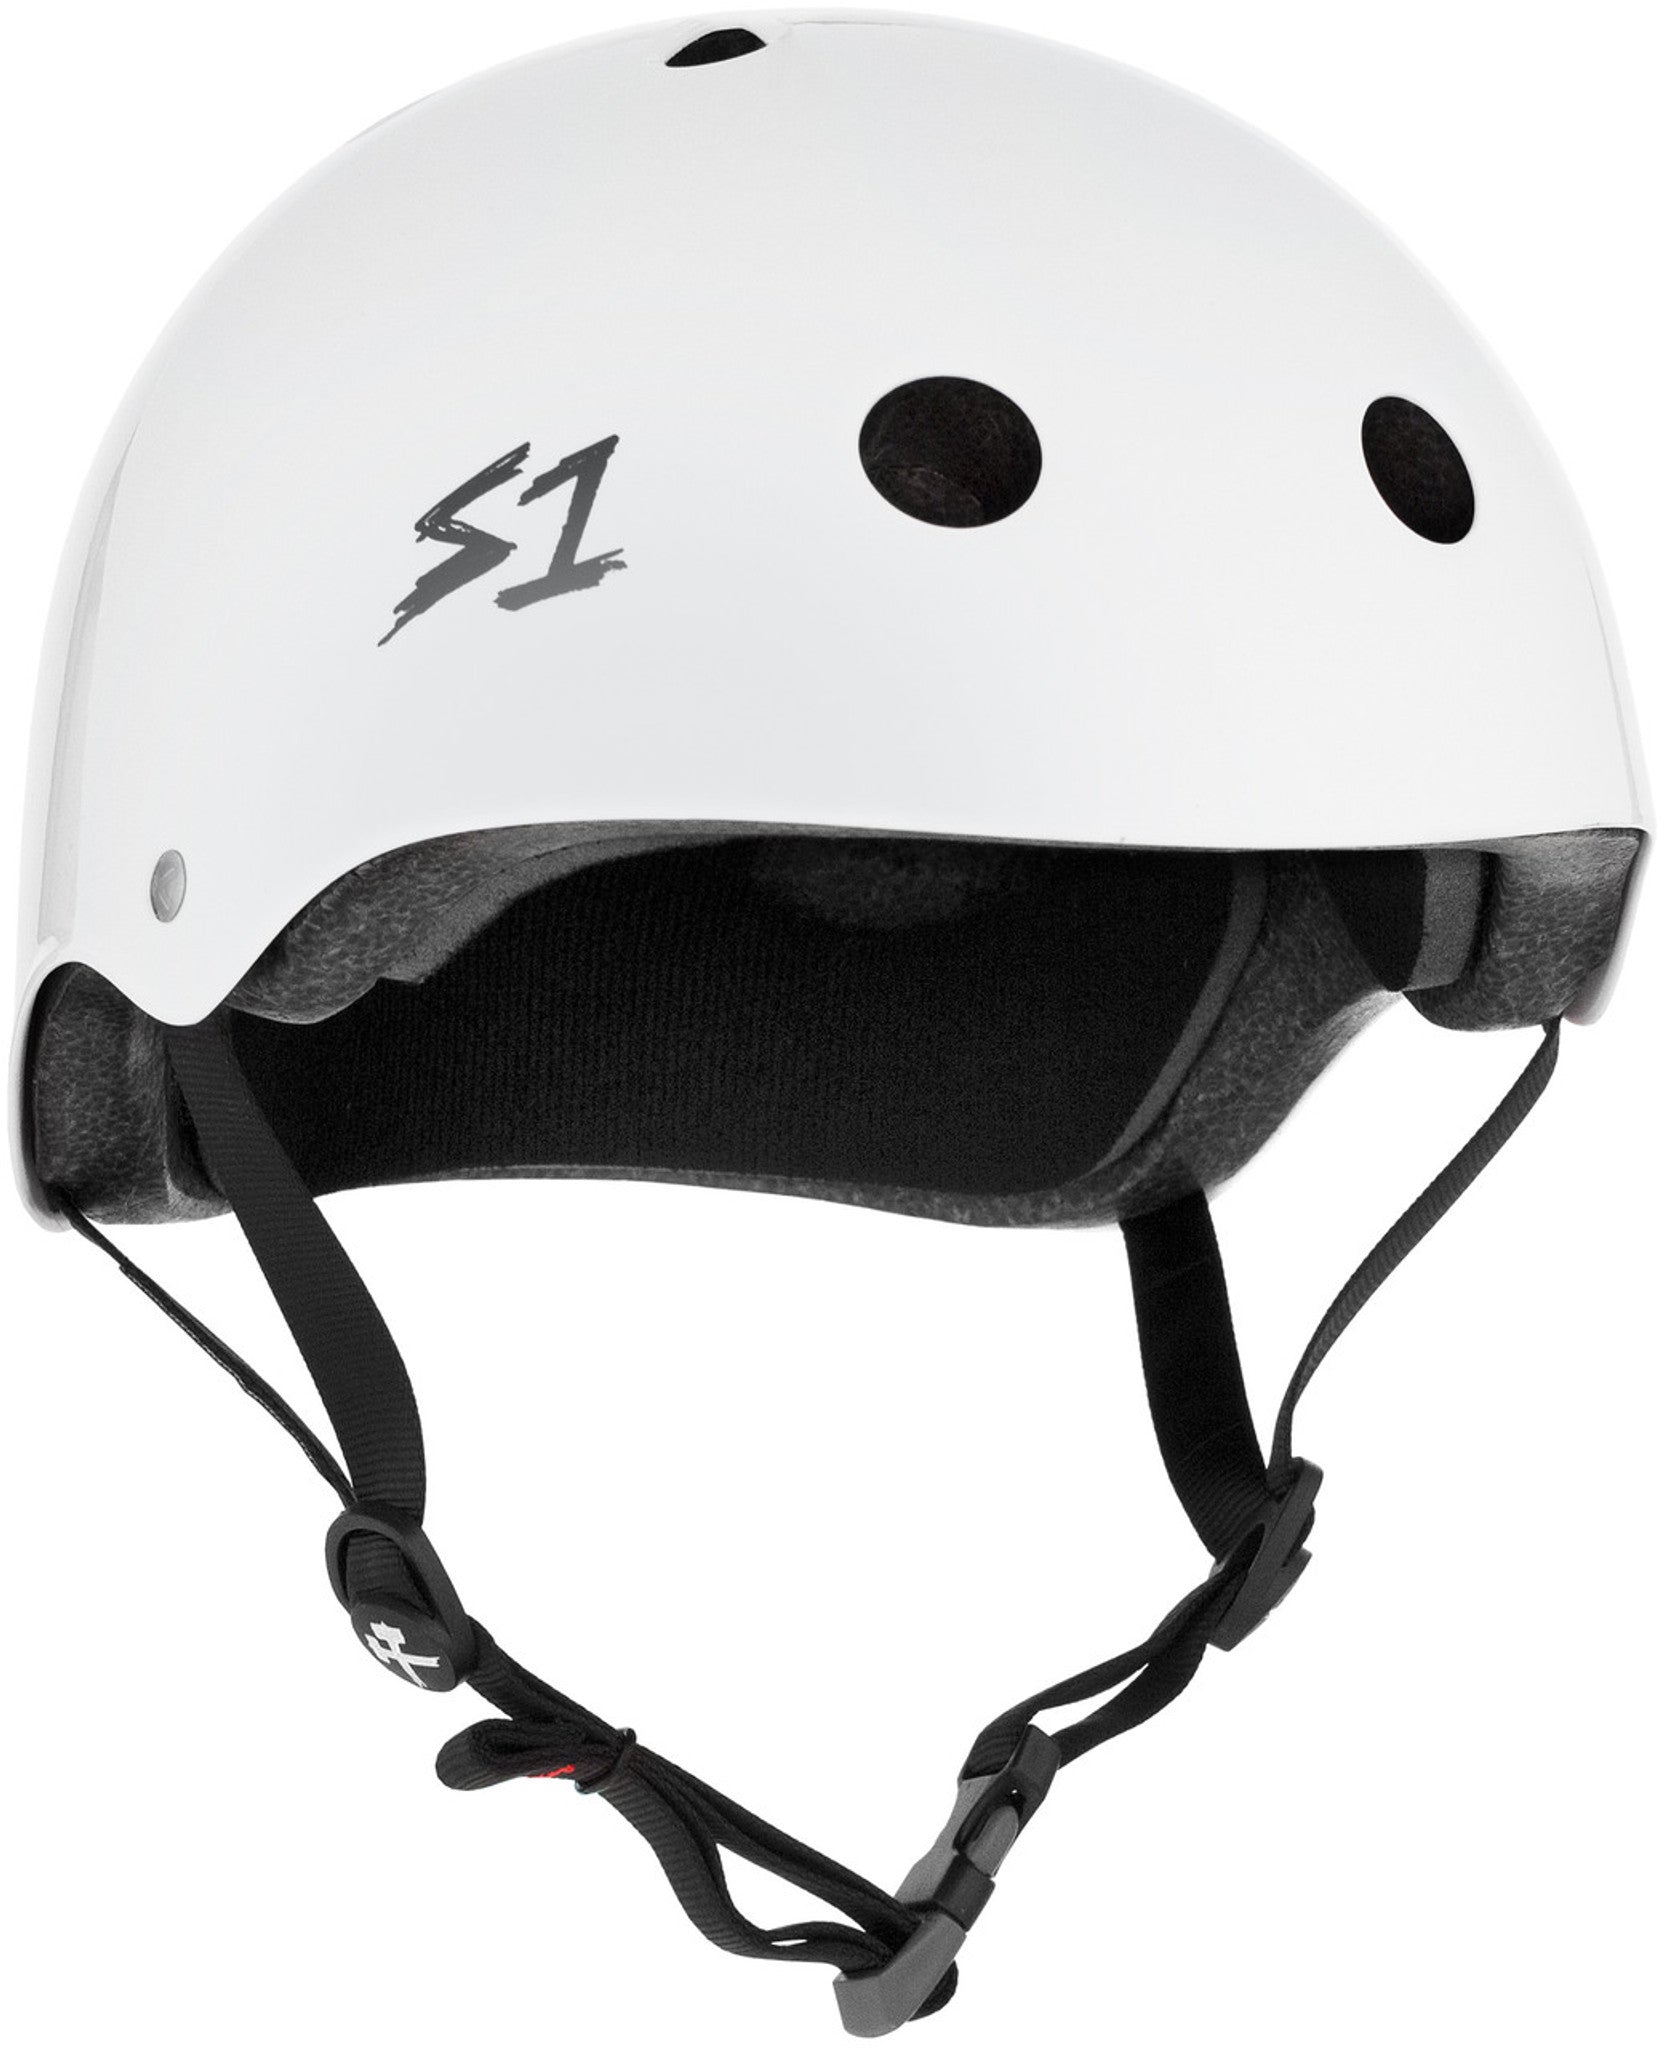 S1 Mega Lifer Helmet